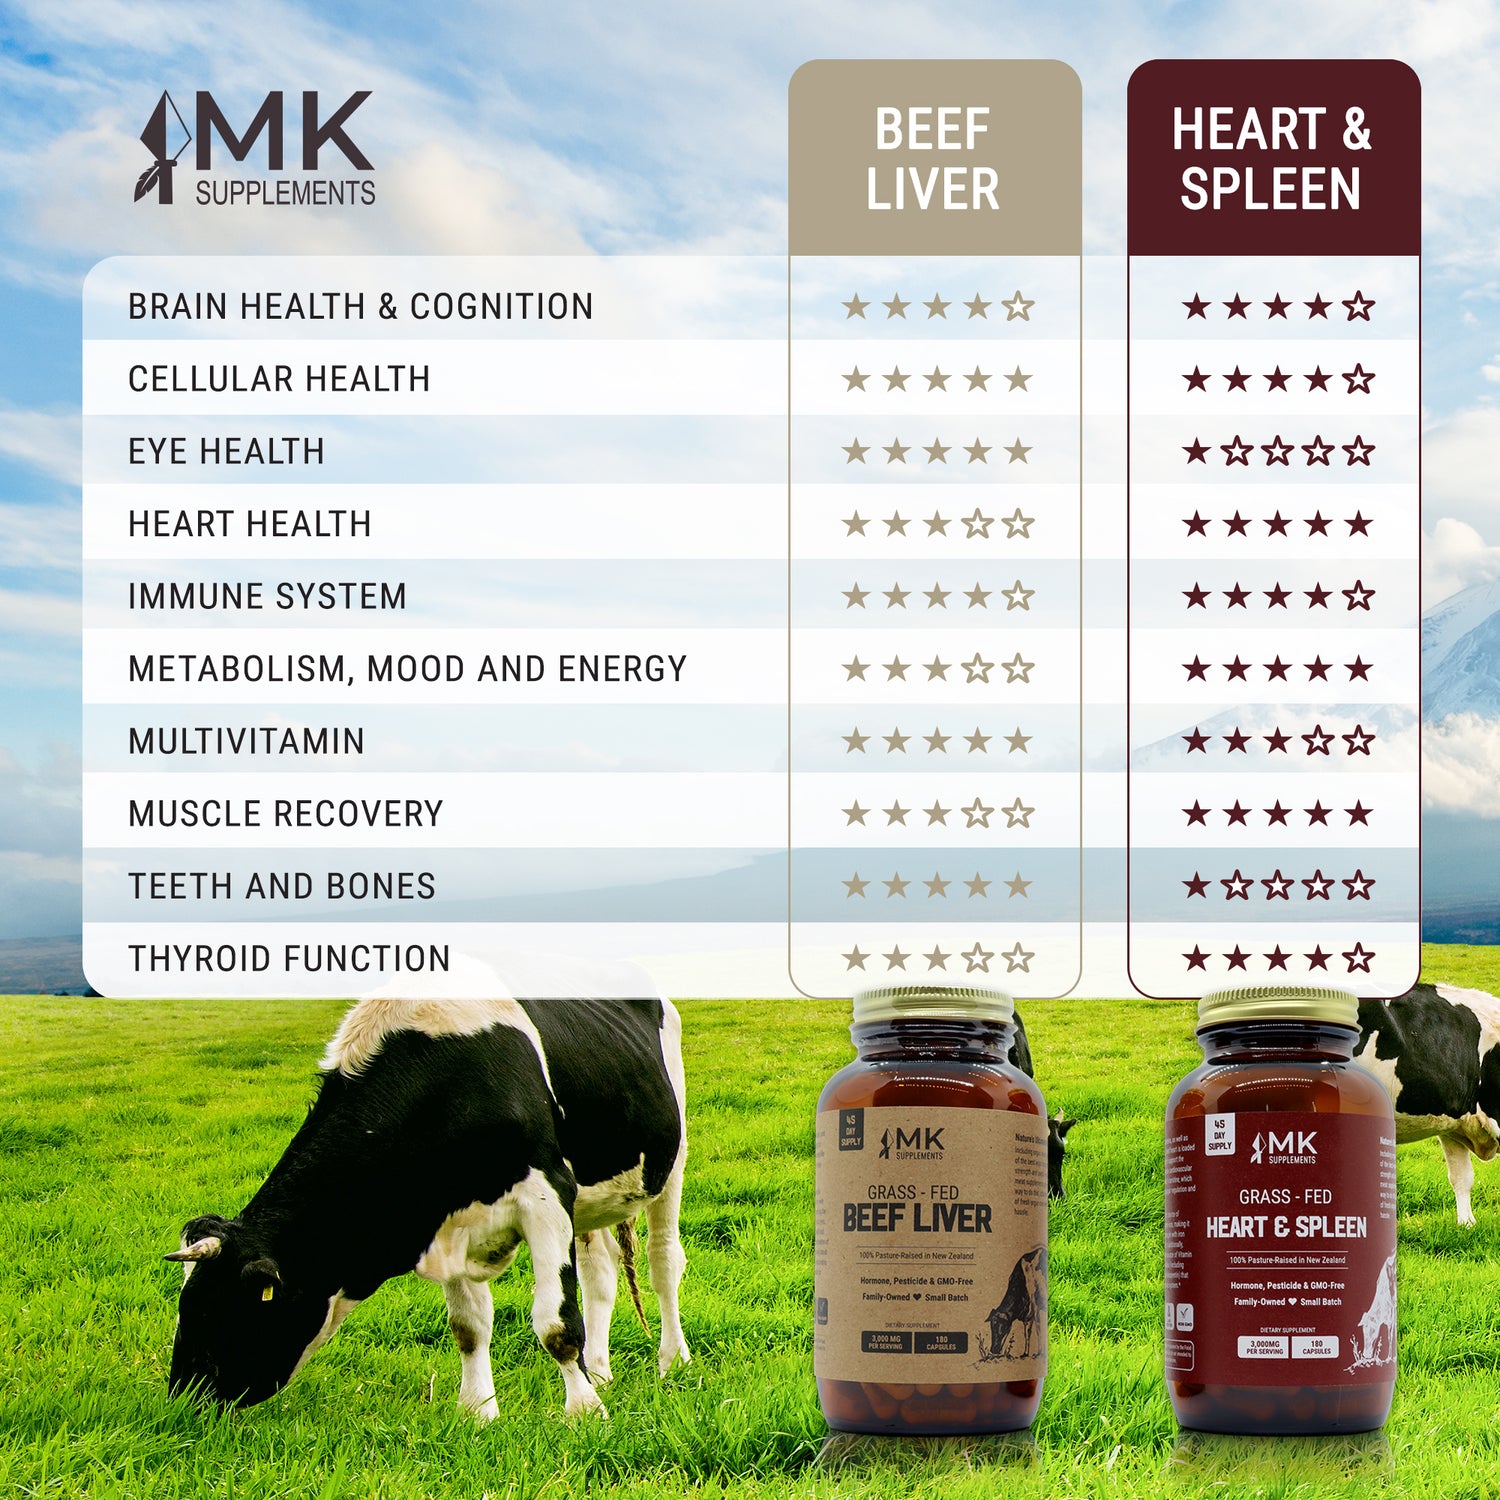 MK Supplements Beef Liver vs. Heart & Spleen